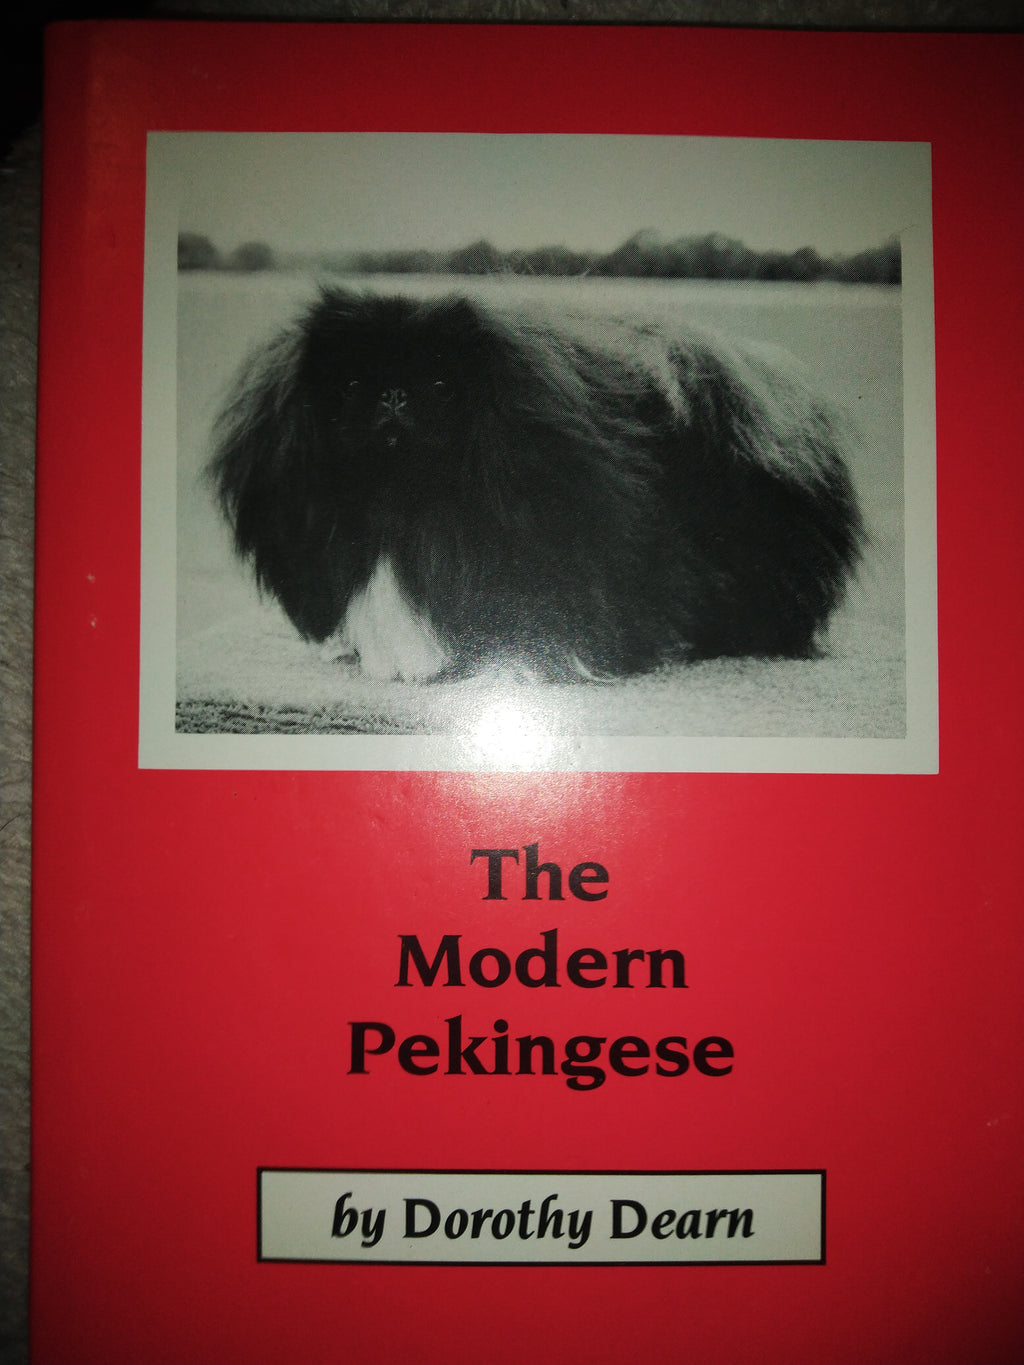 The Modern Pekingese by Dorothy Dearn